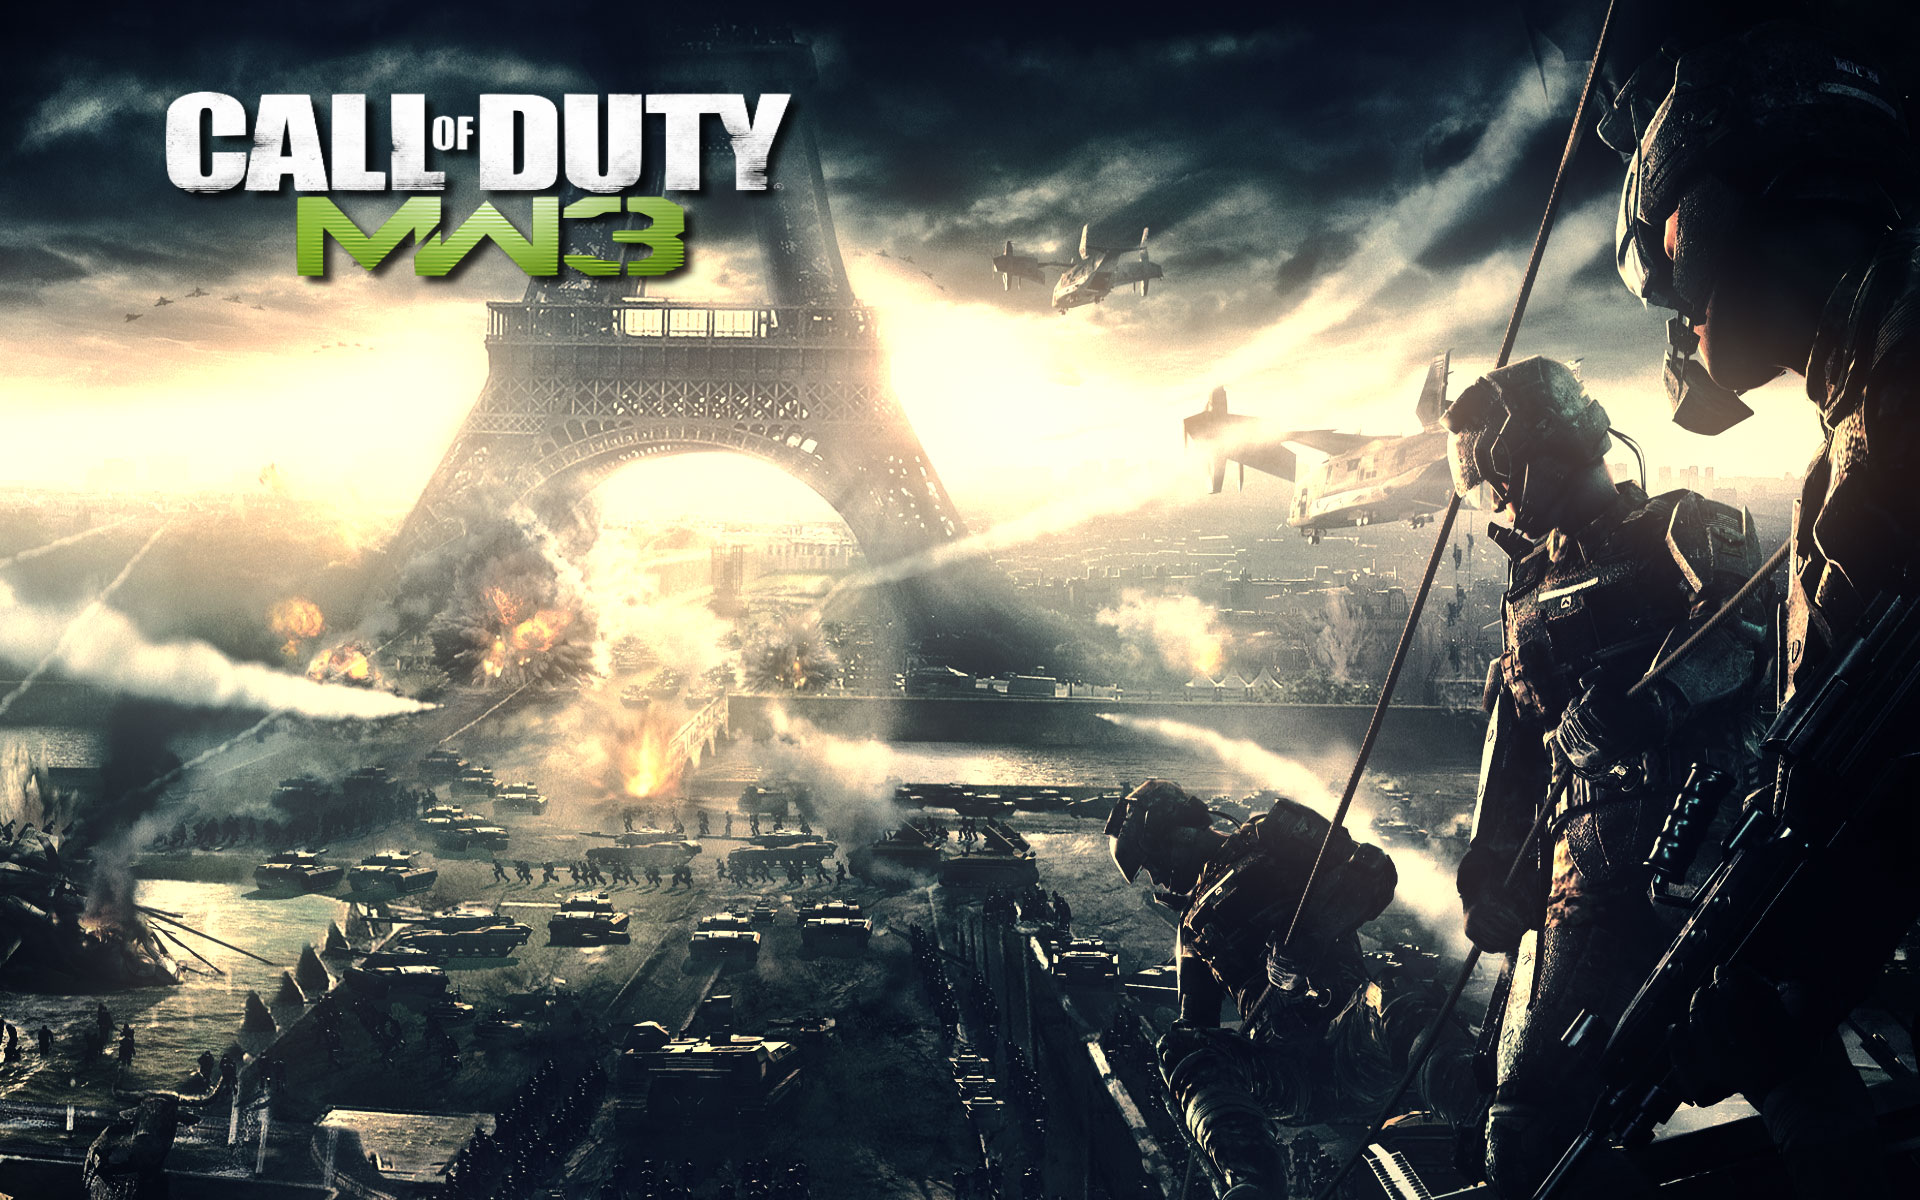 Скачать обои Call Of Duty Modern Warfare 3 на телефон бесплатно